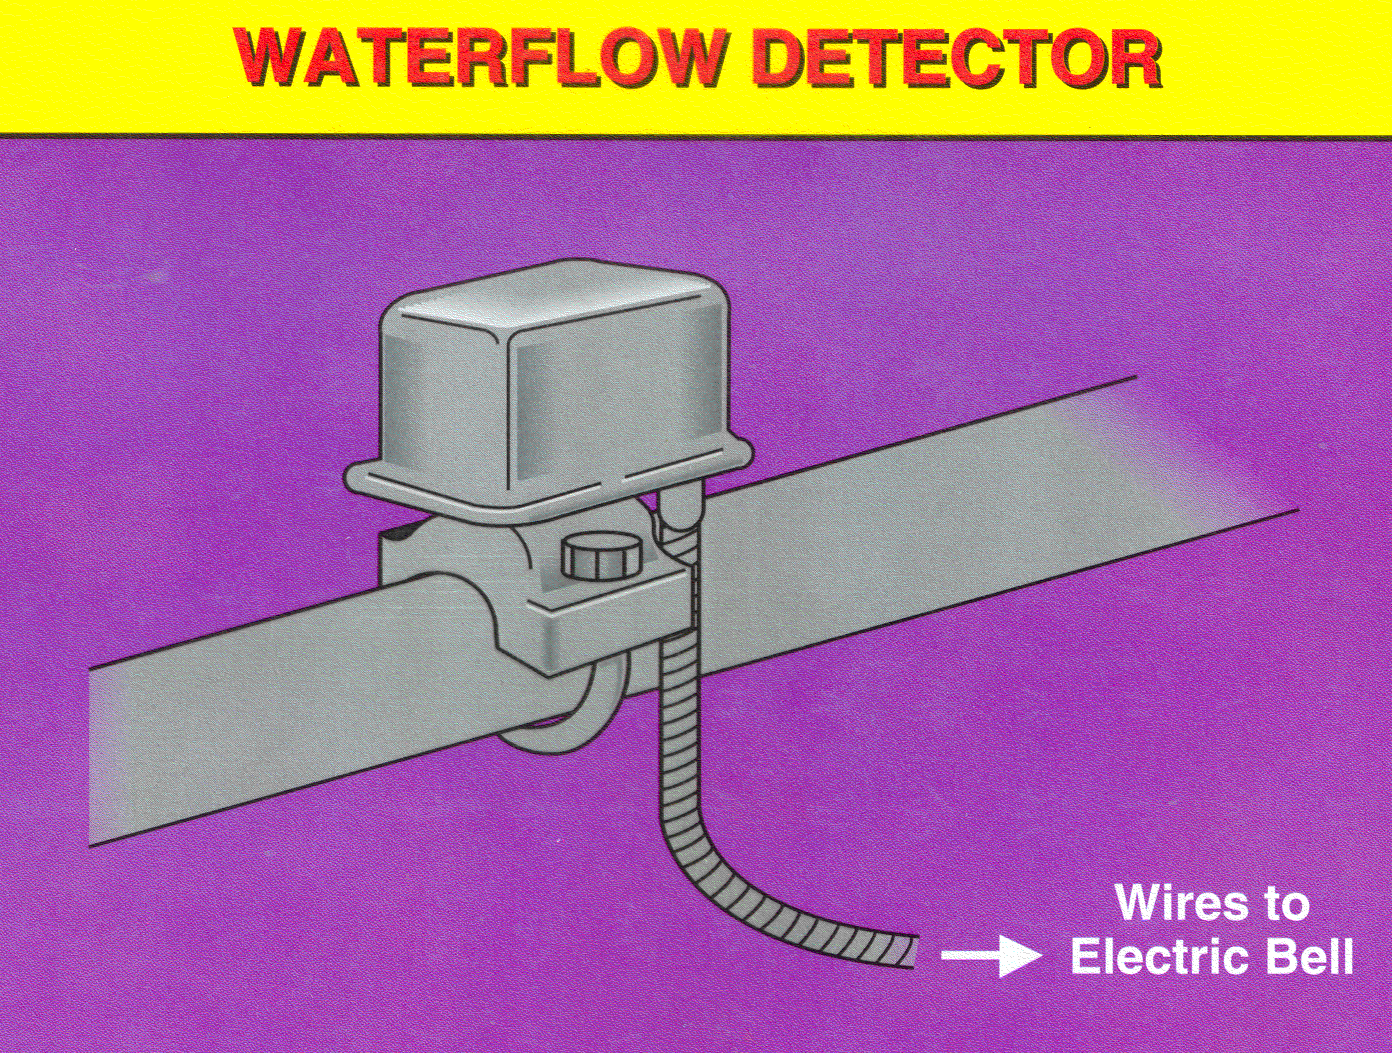 Waterflow Detector